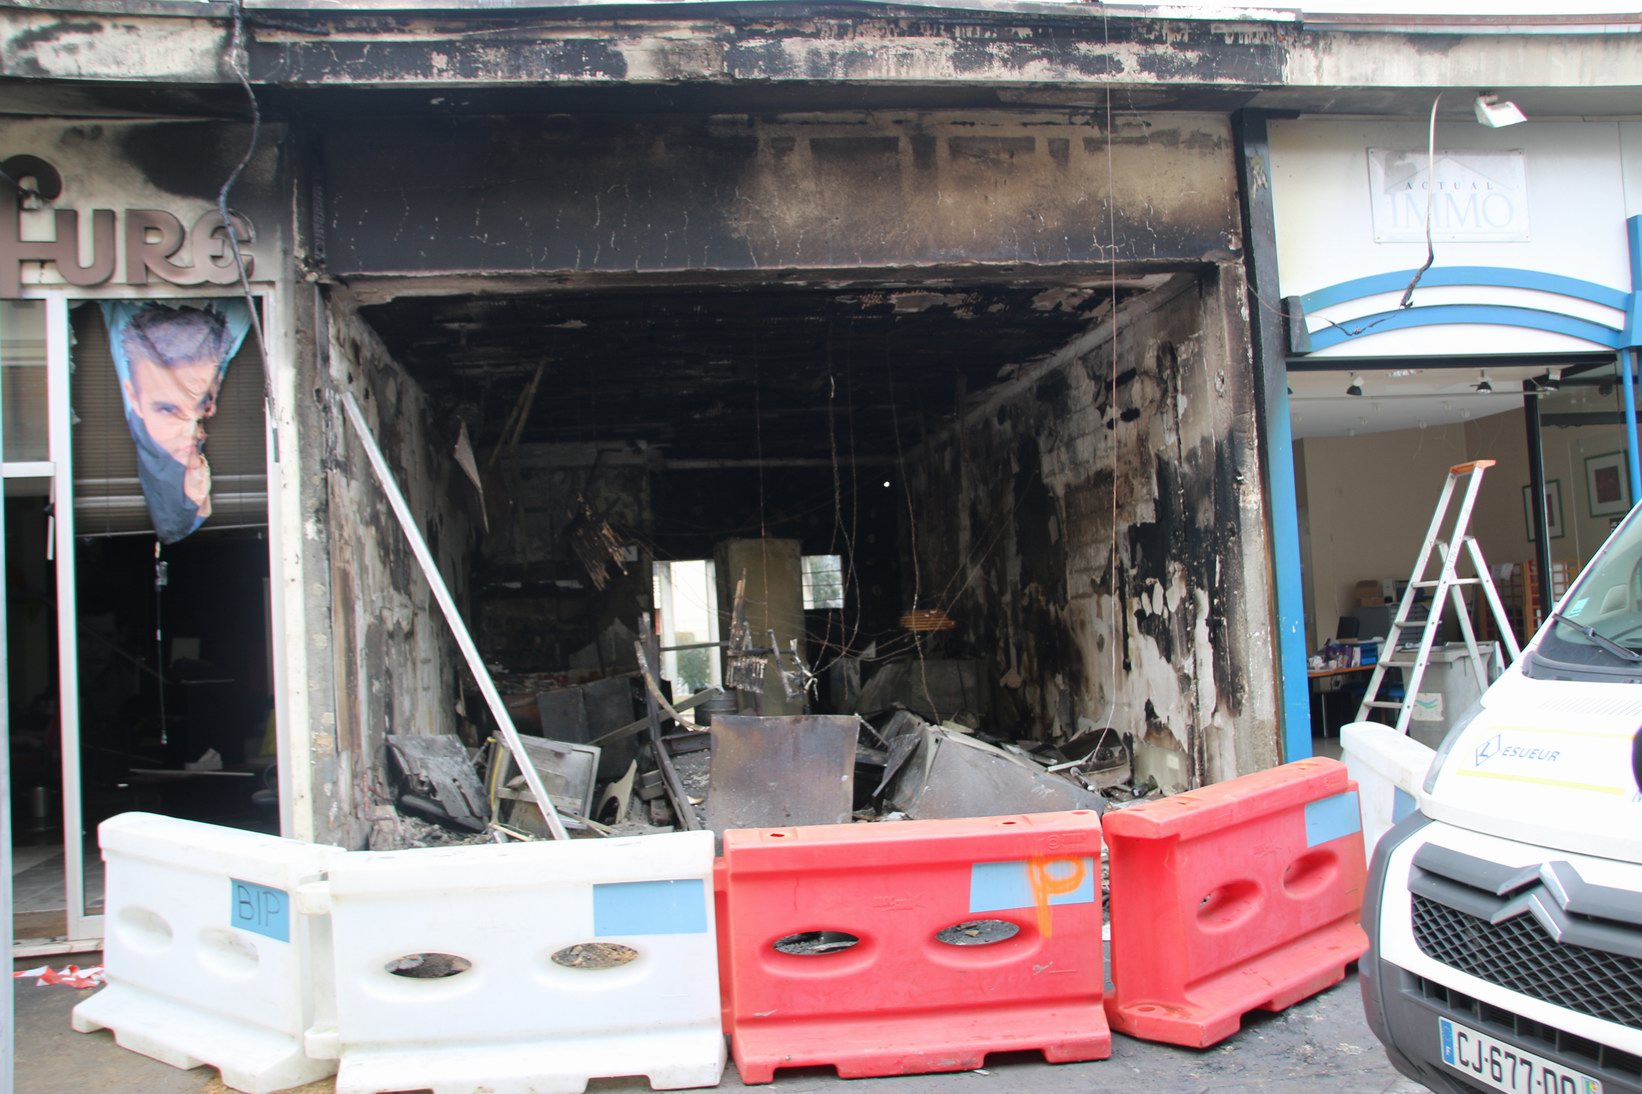 Le kebab a été entièrement soufflé par l'explosion suivie par un incendie (Photo Céline Jégu)